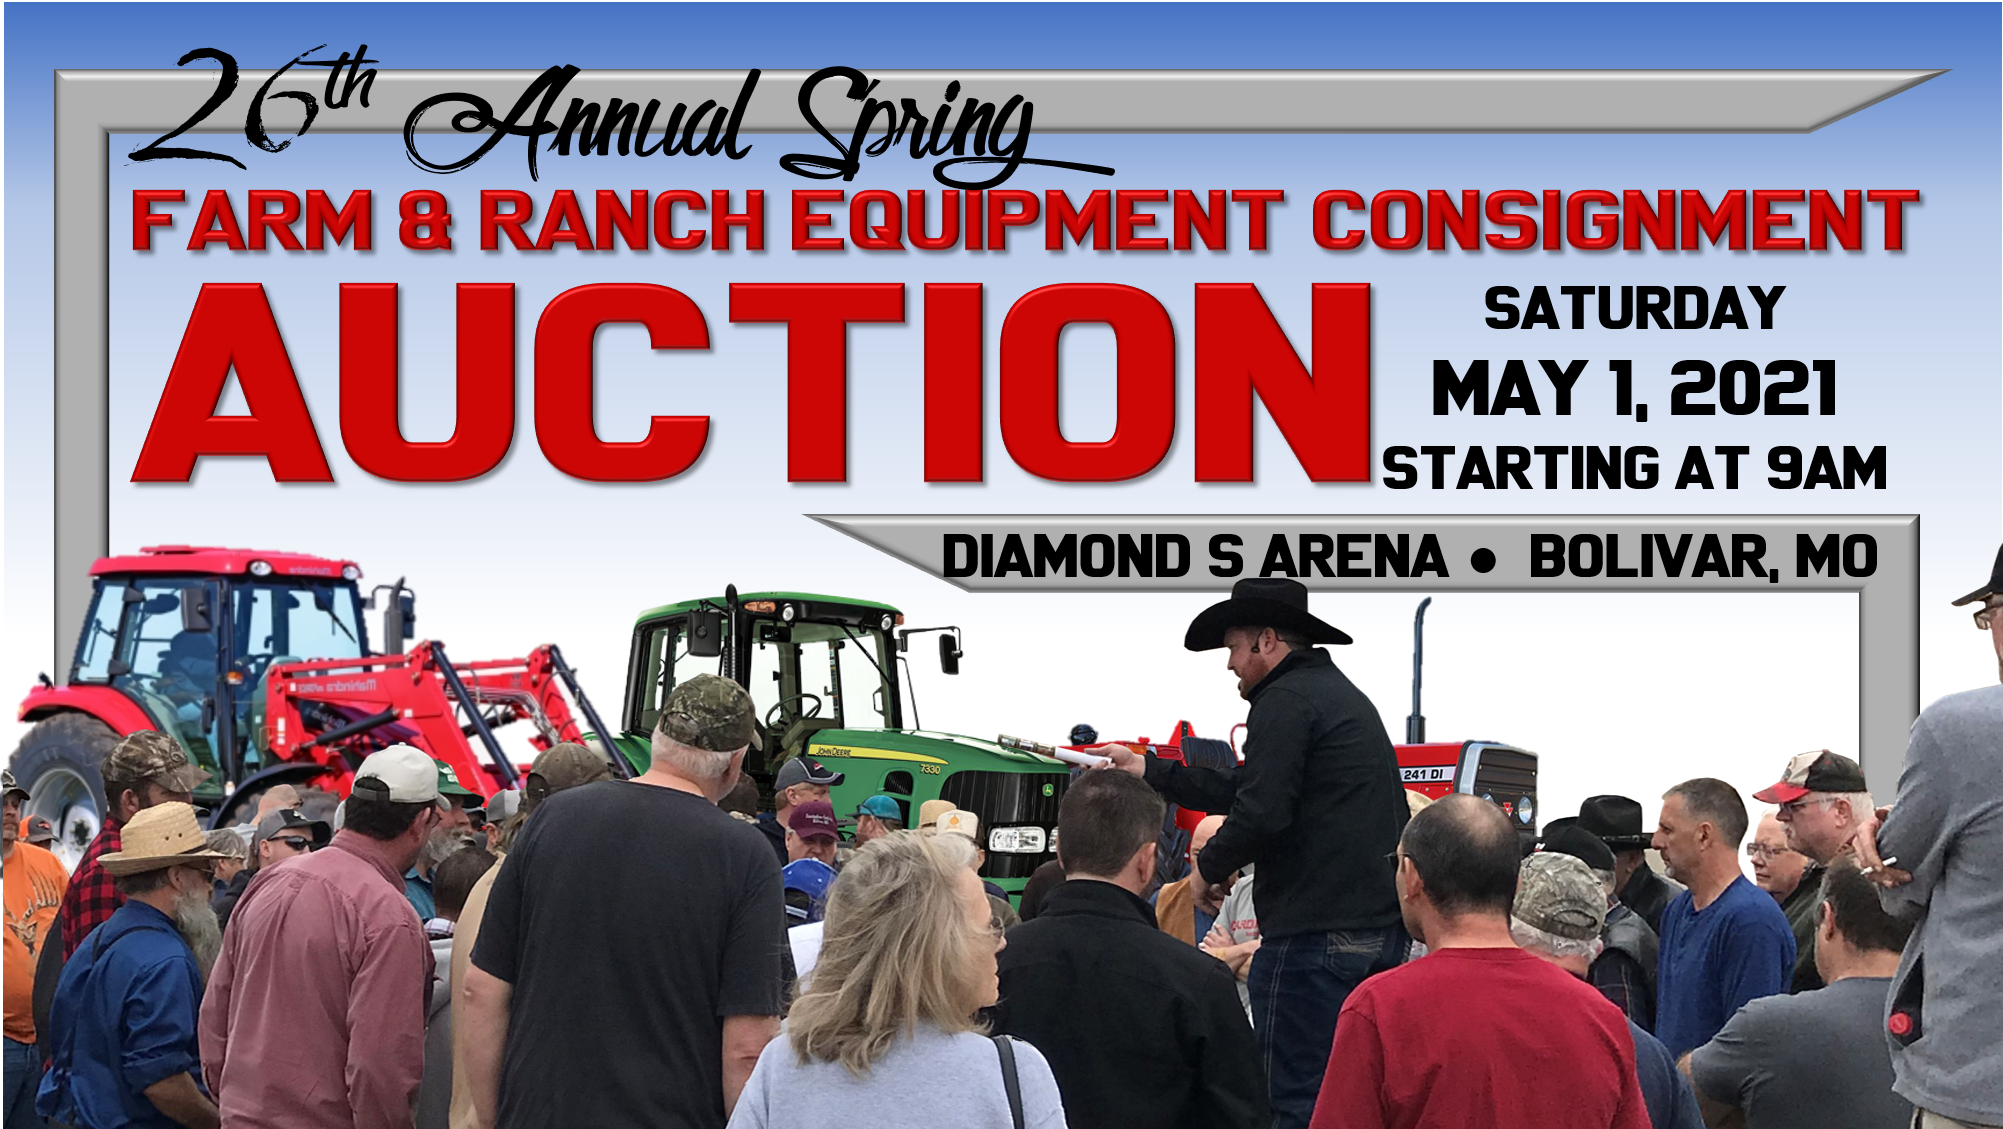 26th Annual Farm & Ranch Equipment Auction